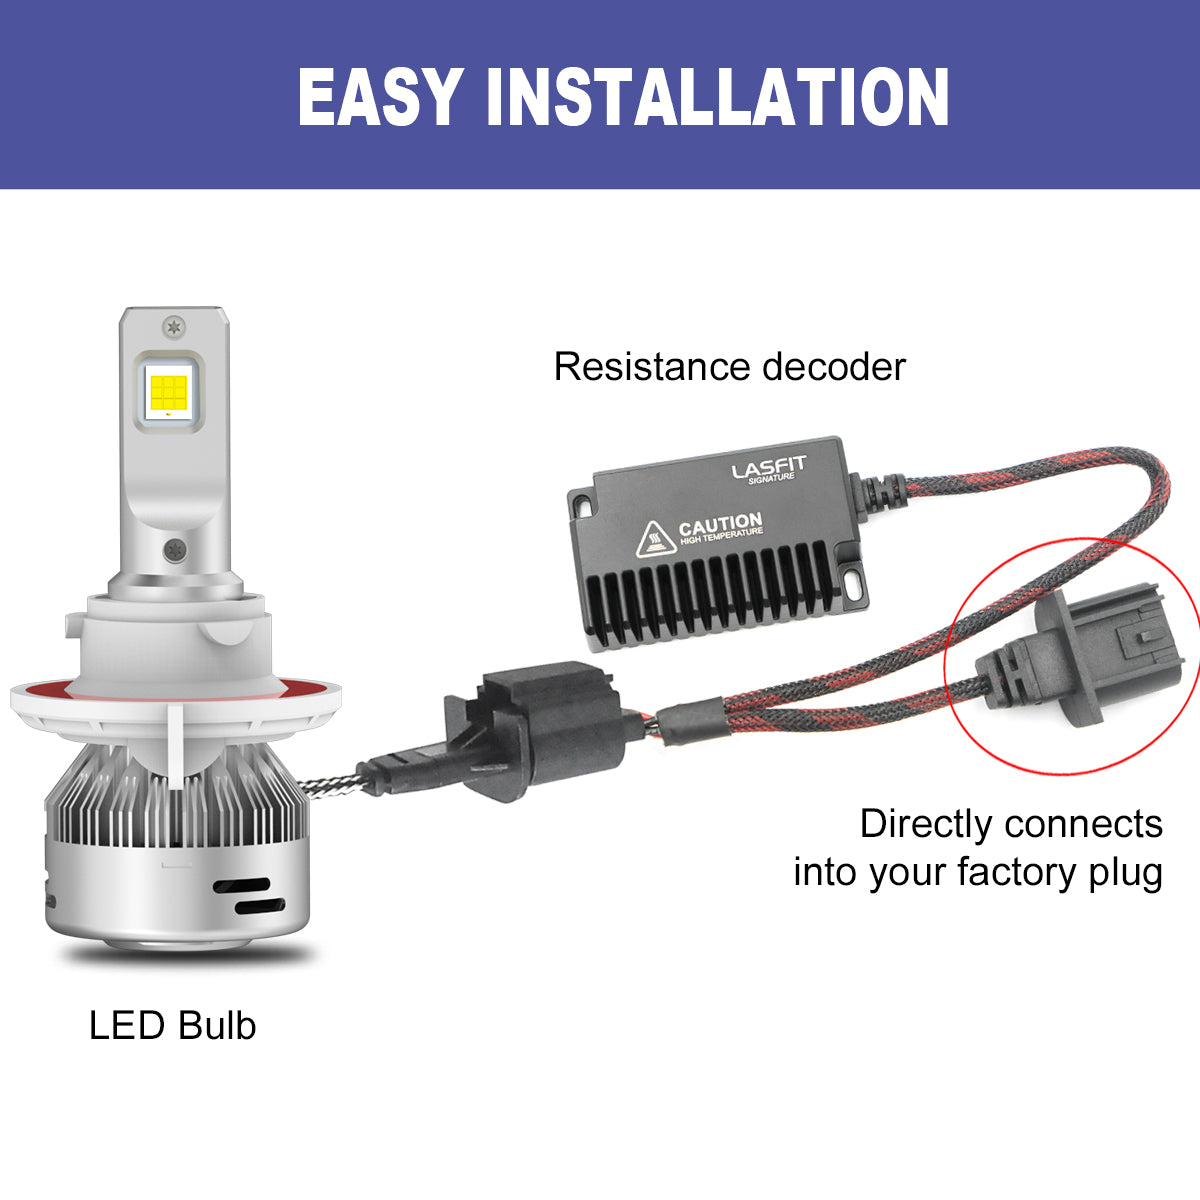 Gen 4 H13 LED Bulb Install